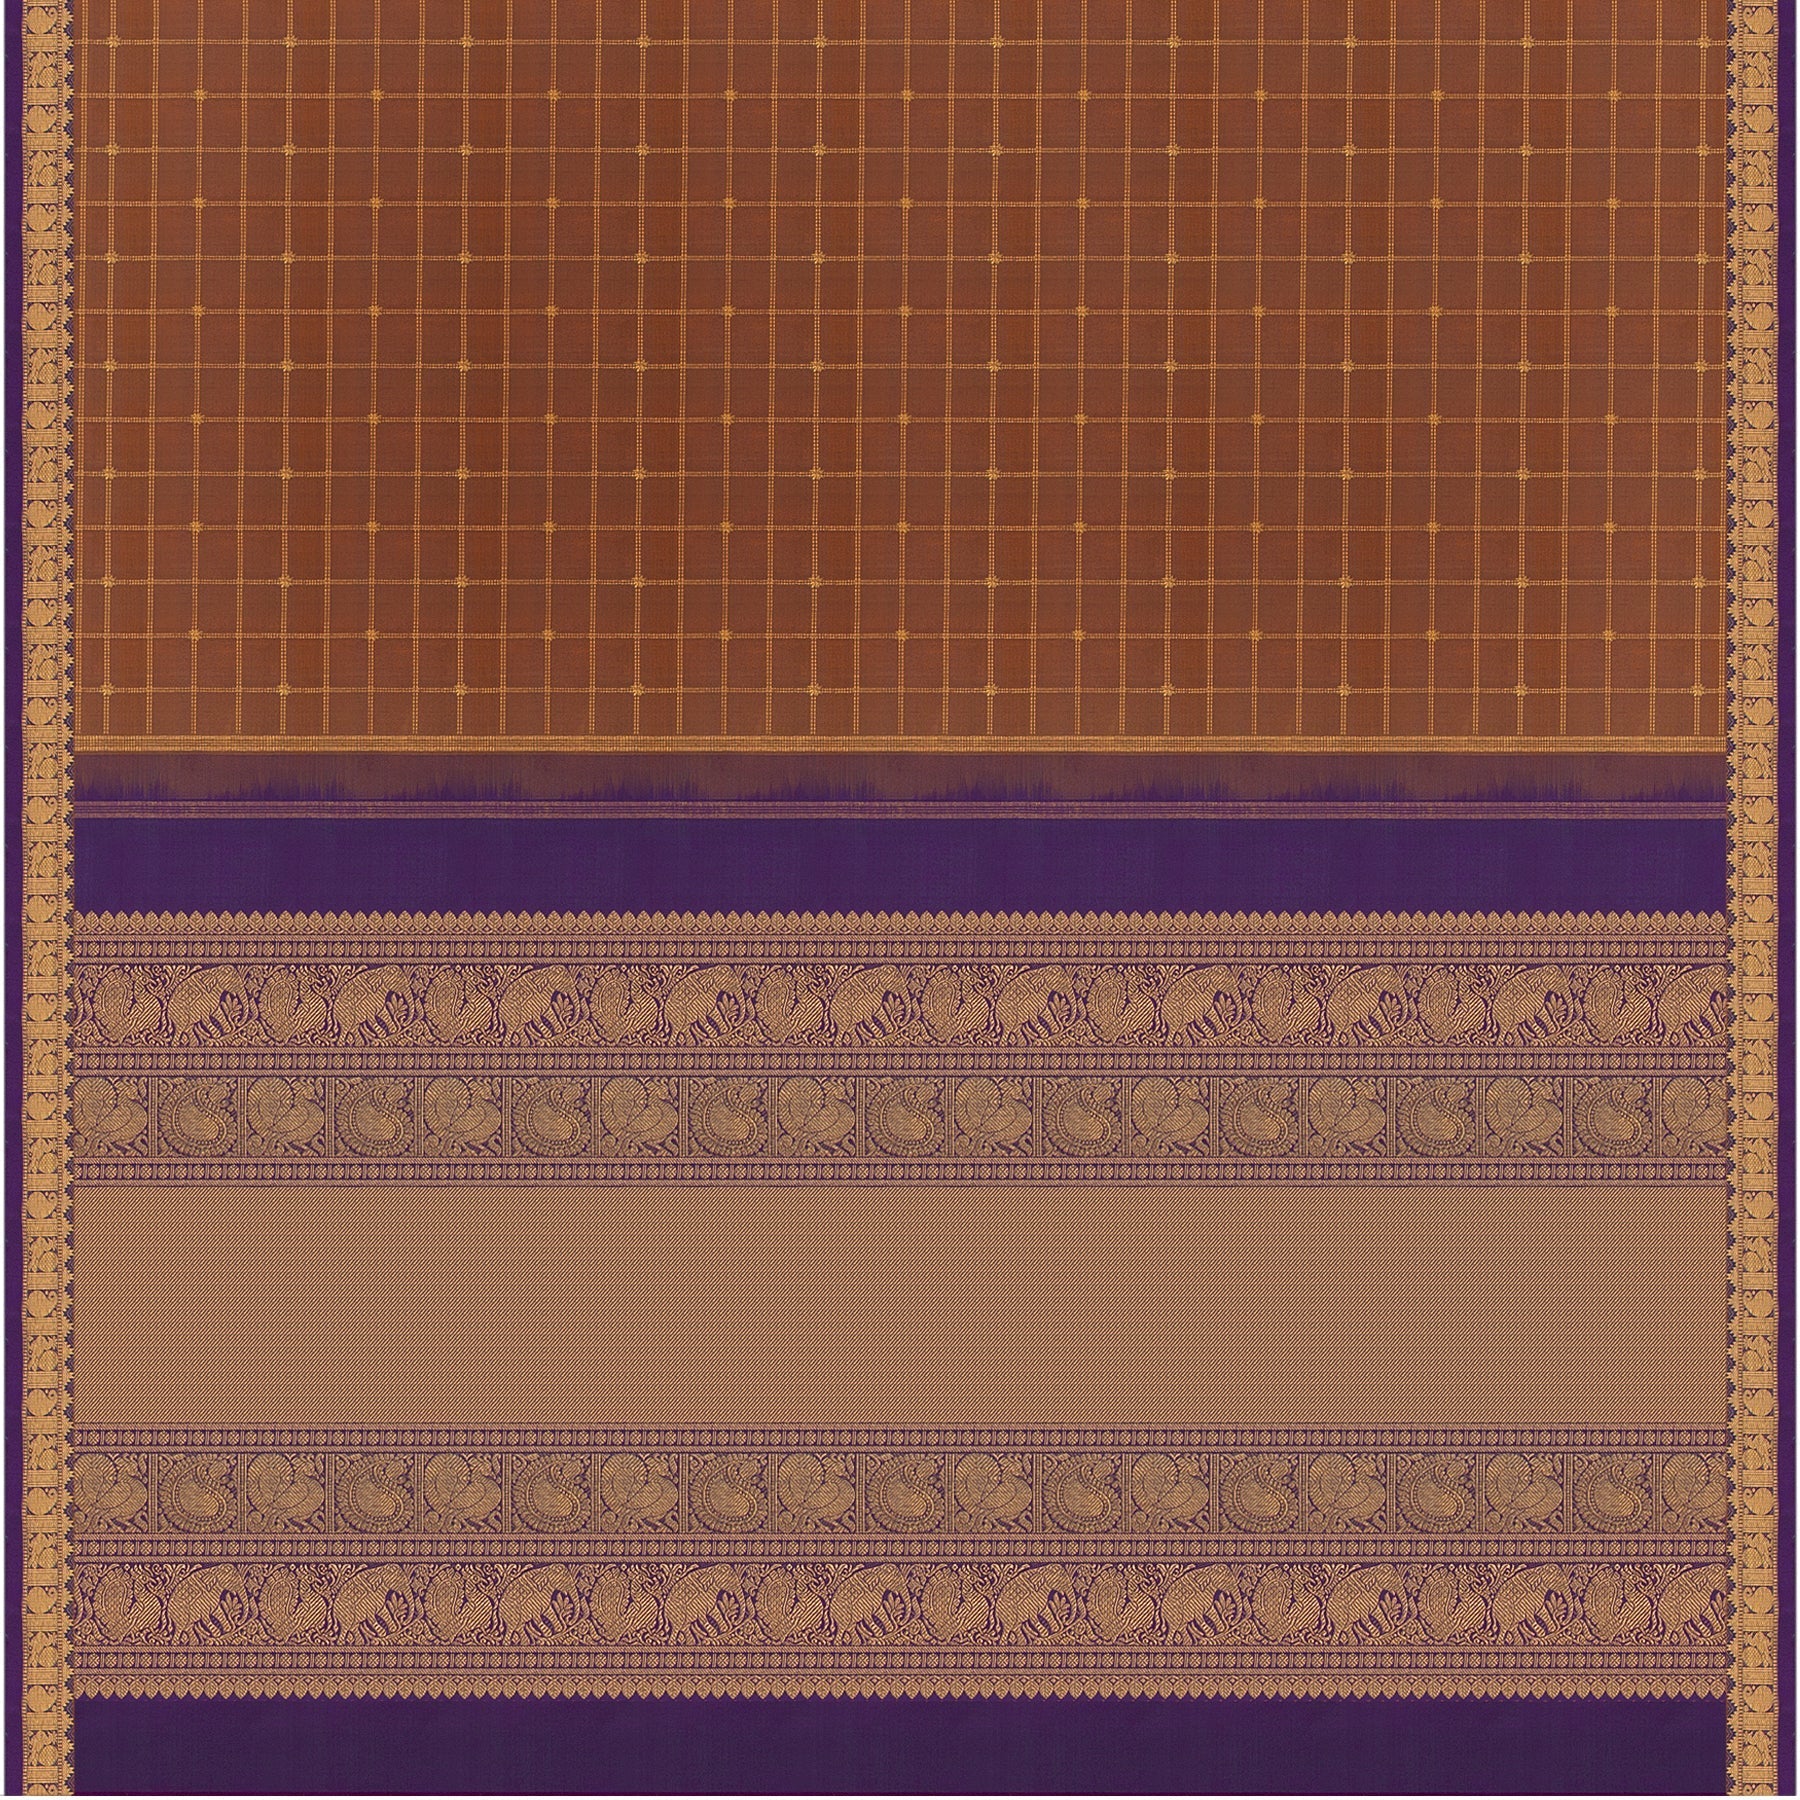 Kanakavalli Kanjivaram Silk Sari 23-595-HS001-06633 - Full View